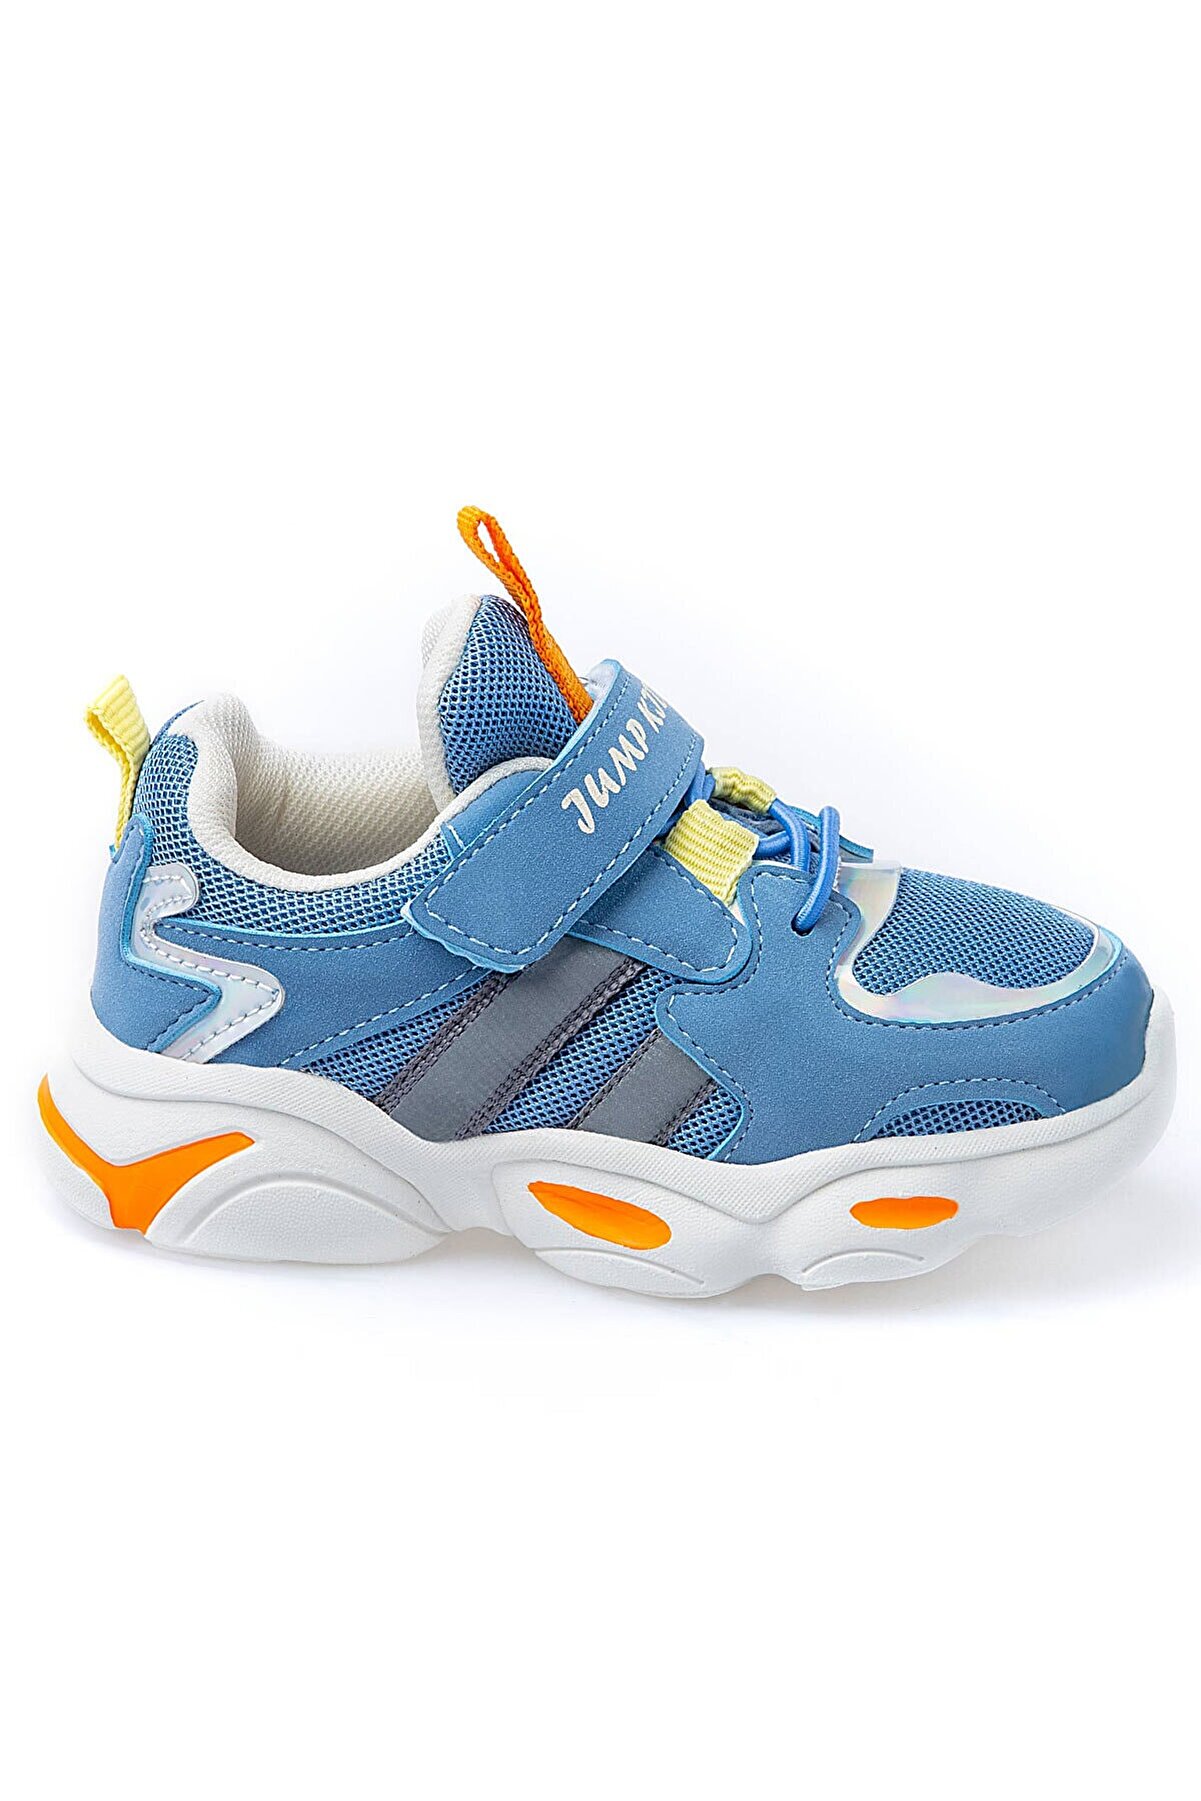 Jump Çocuk Spor Ayakkabı 26056 G Blue/yellow/orange